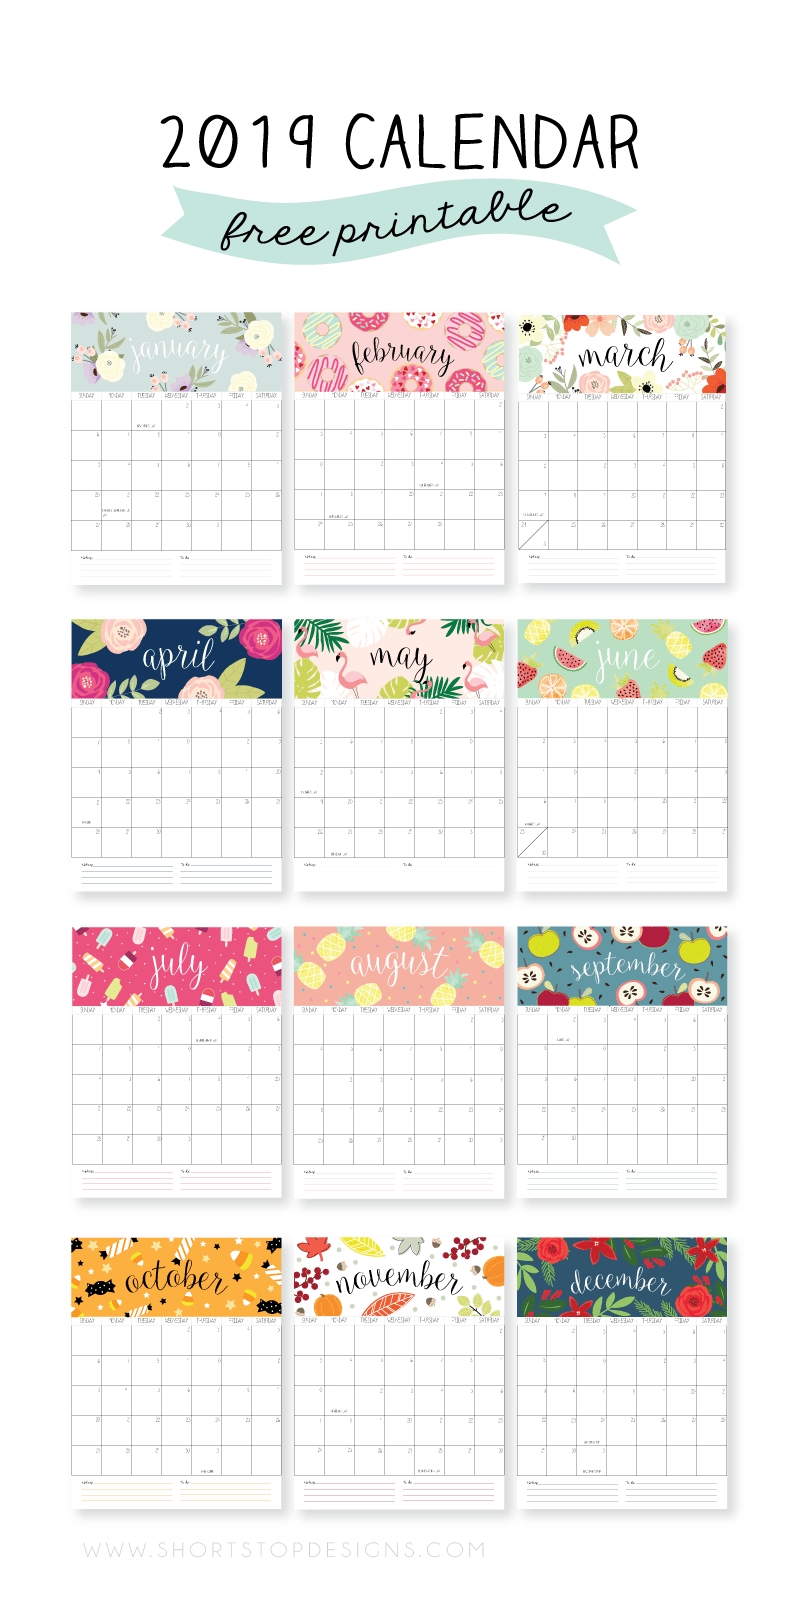 Calendar 2020 Pinterest | Calendar Ideas Design Creative with regard to December Calendar 2020 Pinterest